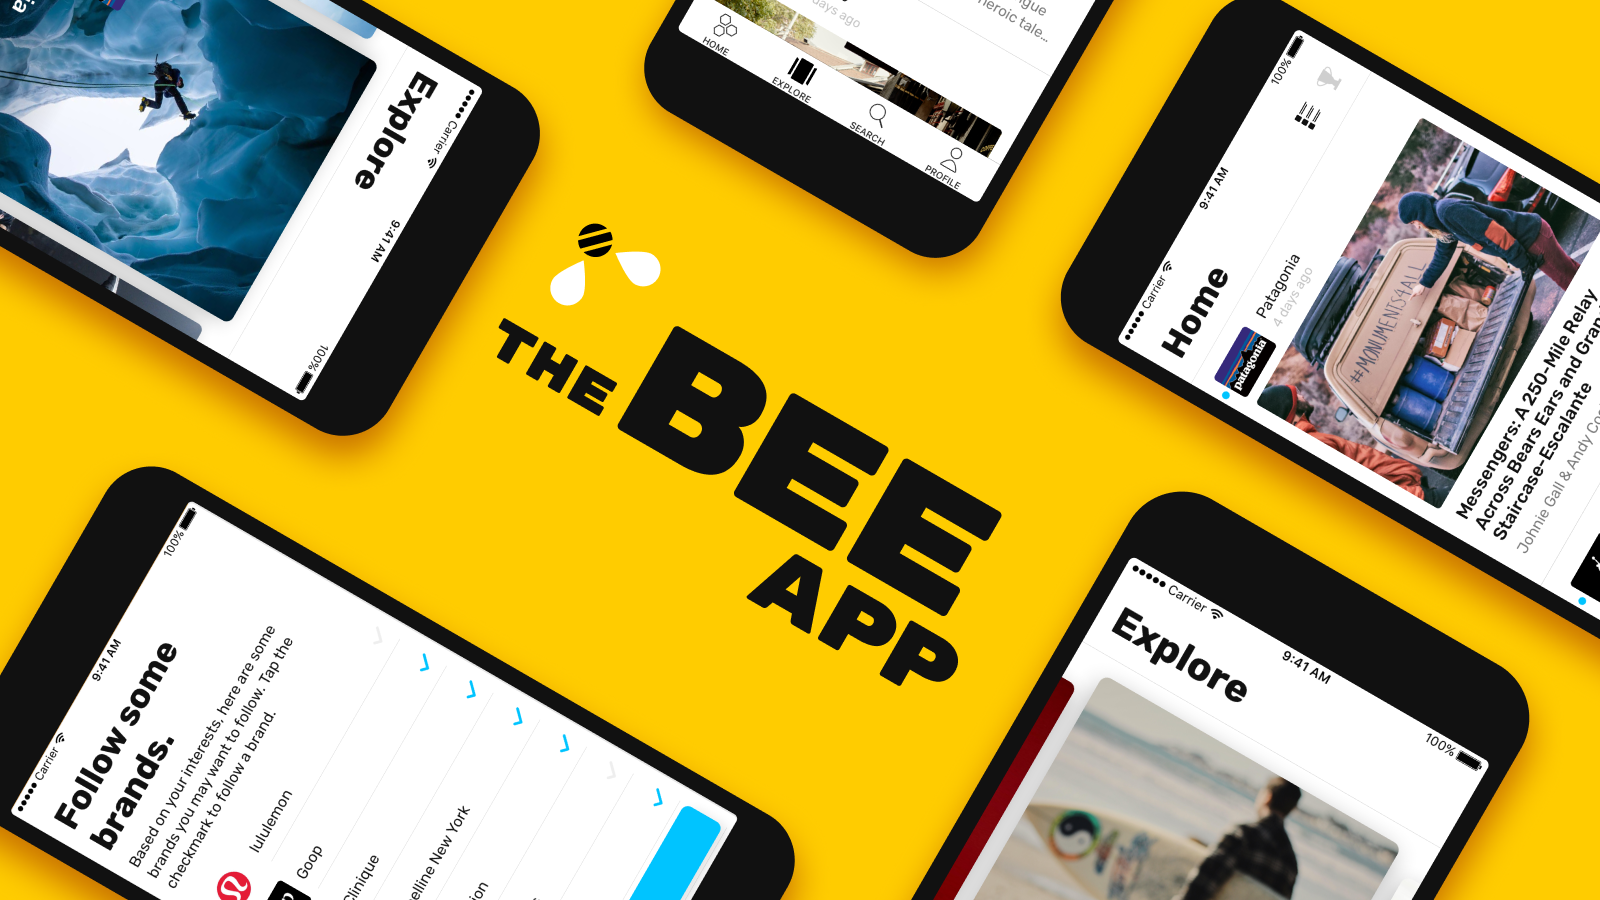 The Bee App